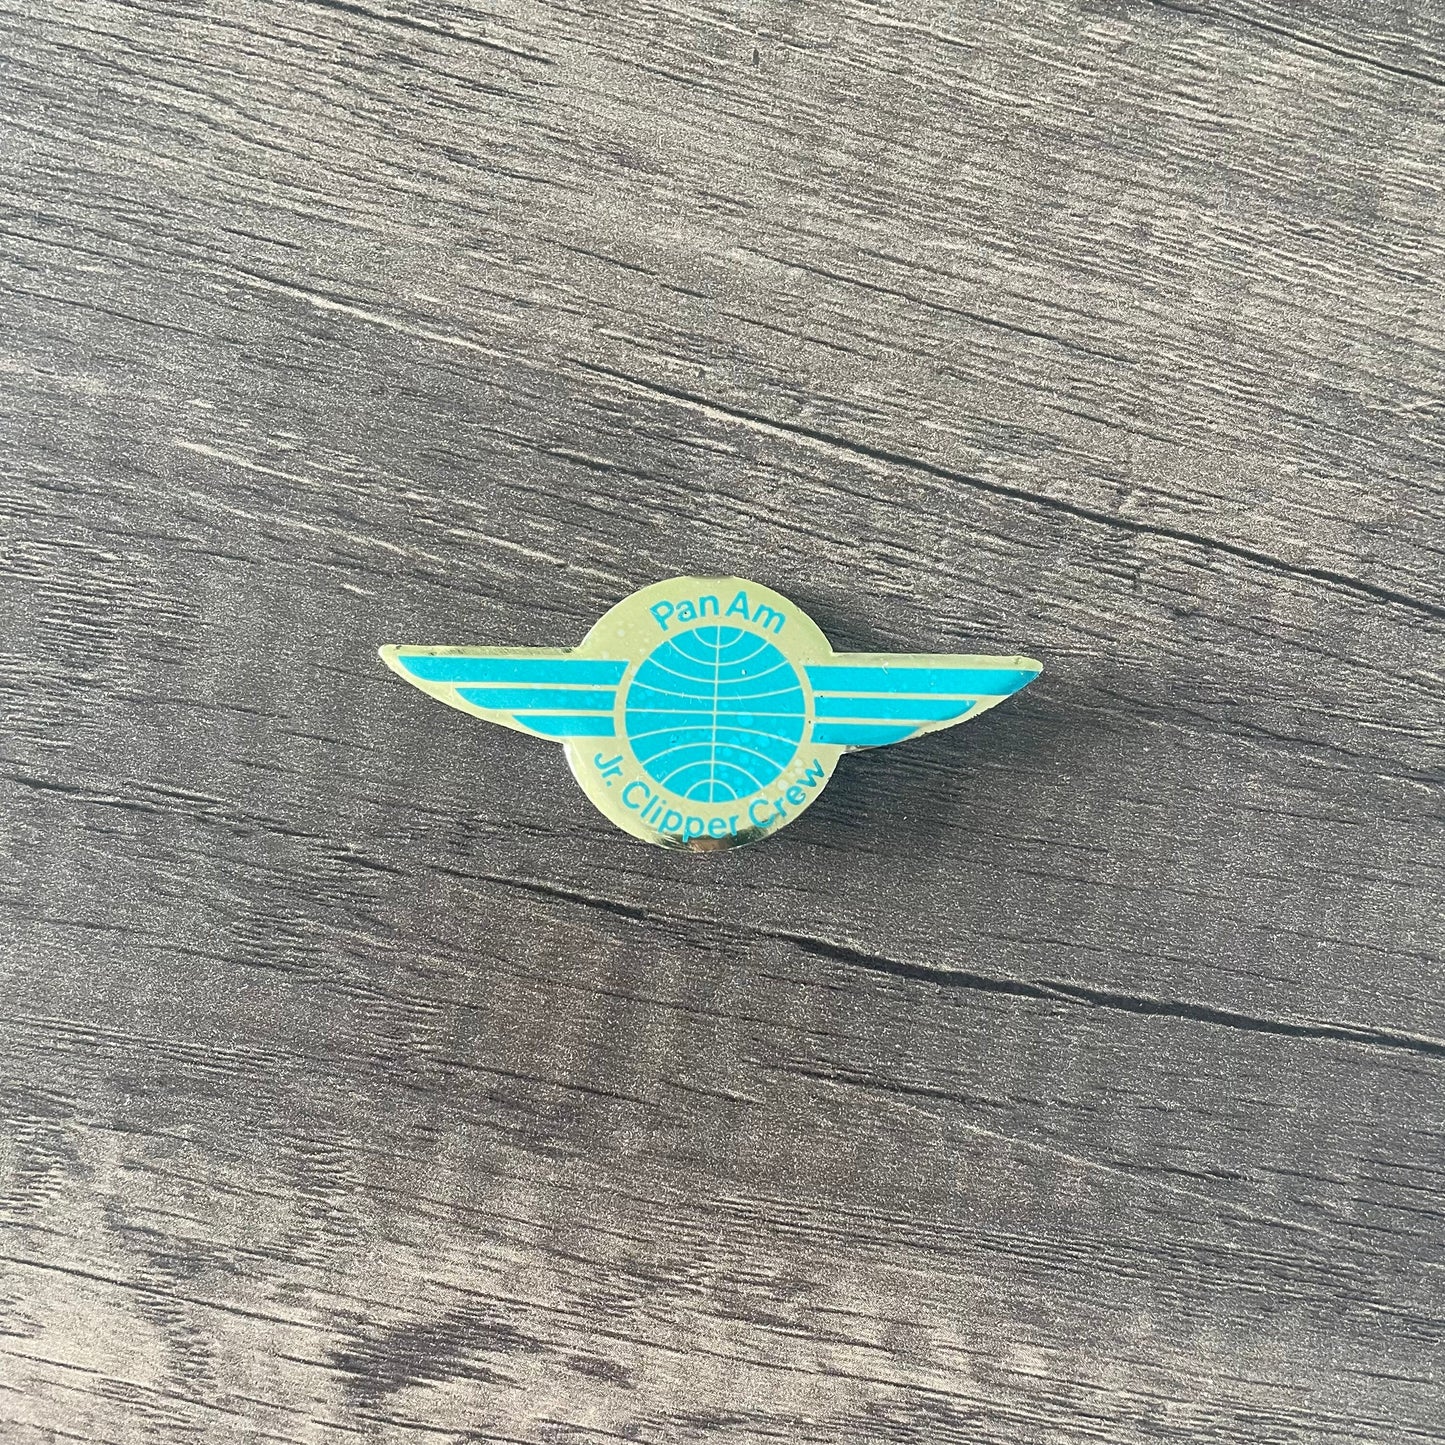 Panam Pan American Junior Clipper Pilot Badge Training Rare Boeing Collectible Airbus memorabilia